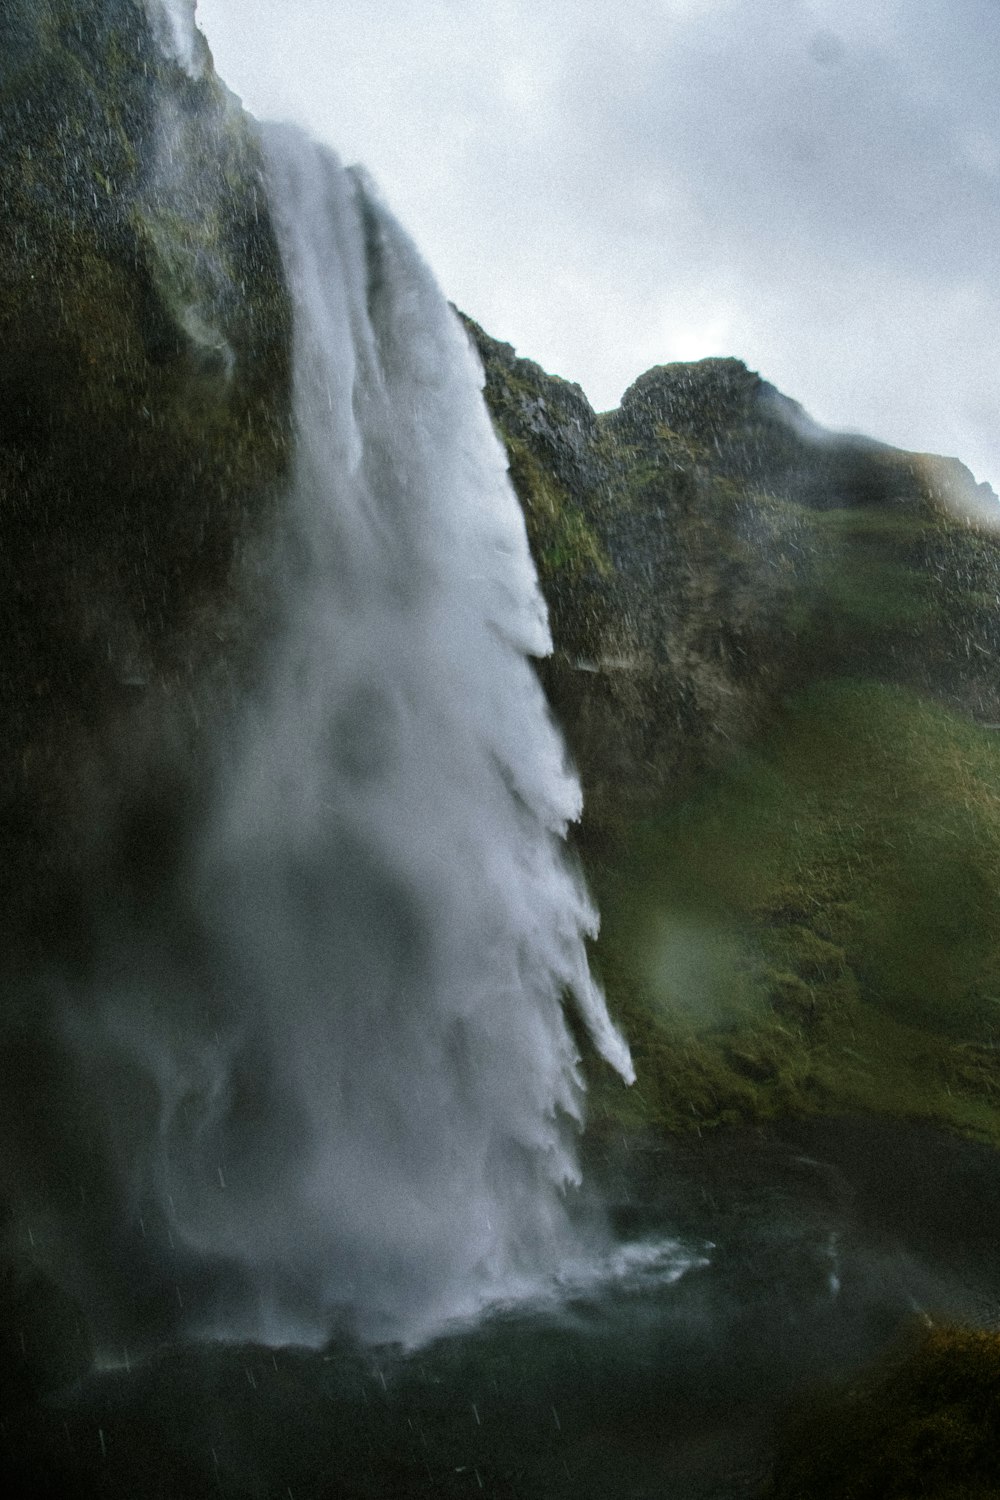 Ein sehr hoher Wasserfall, aus dem ein Haufen Wasser herauskommt